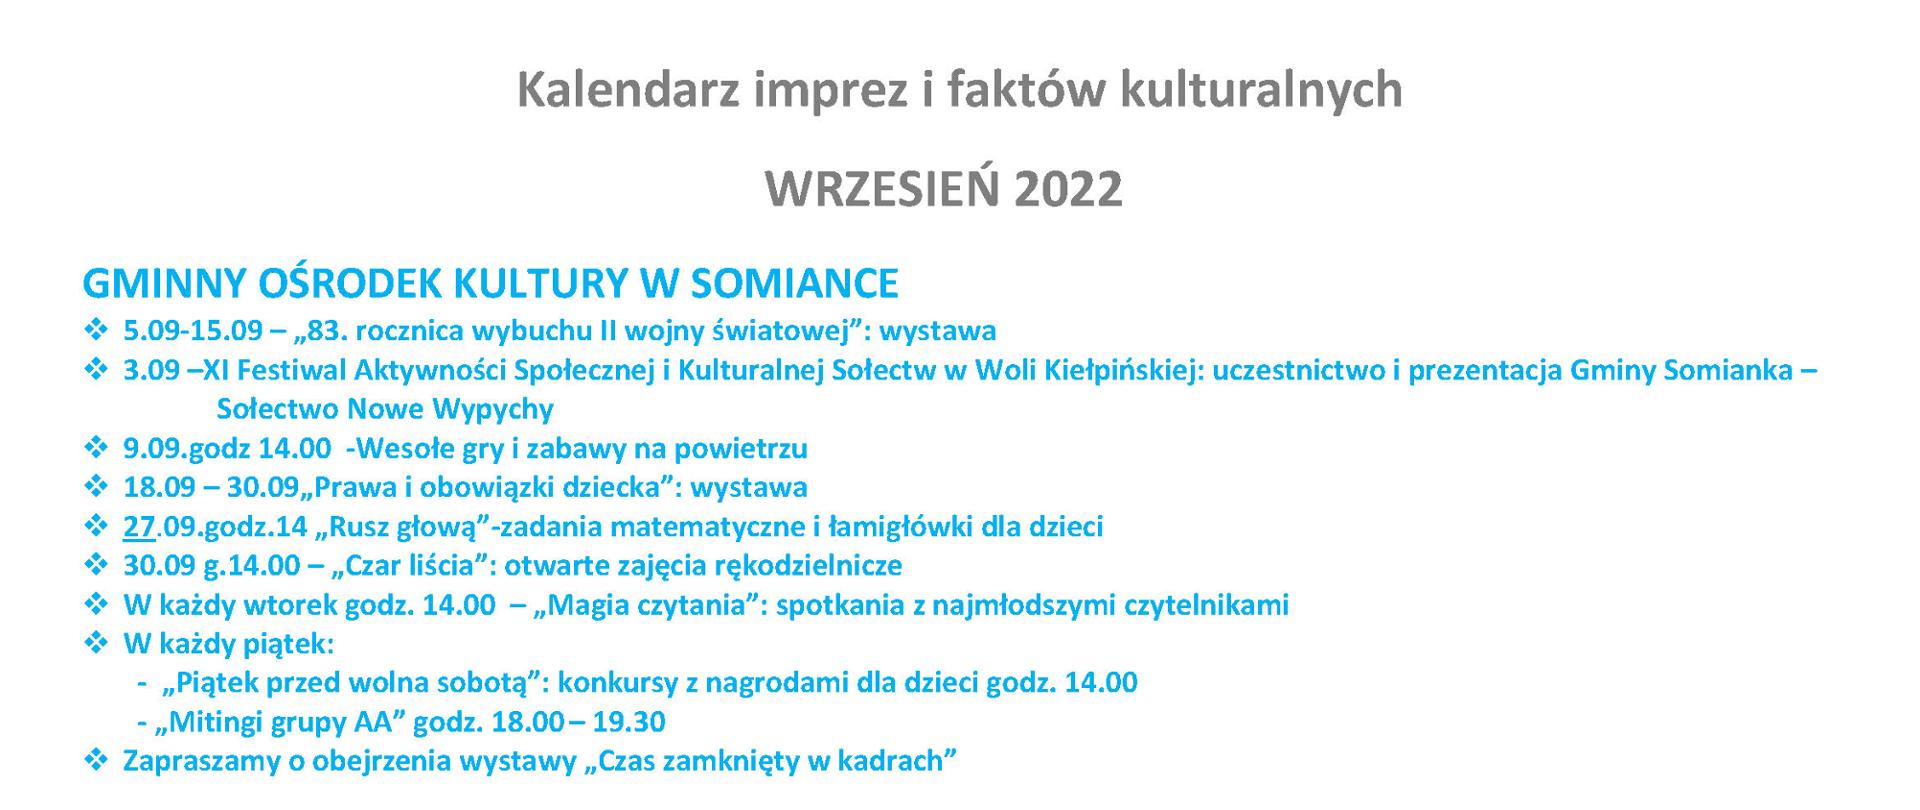 Kalendarz imprez i faktów kulturalnych wrzesień 2022